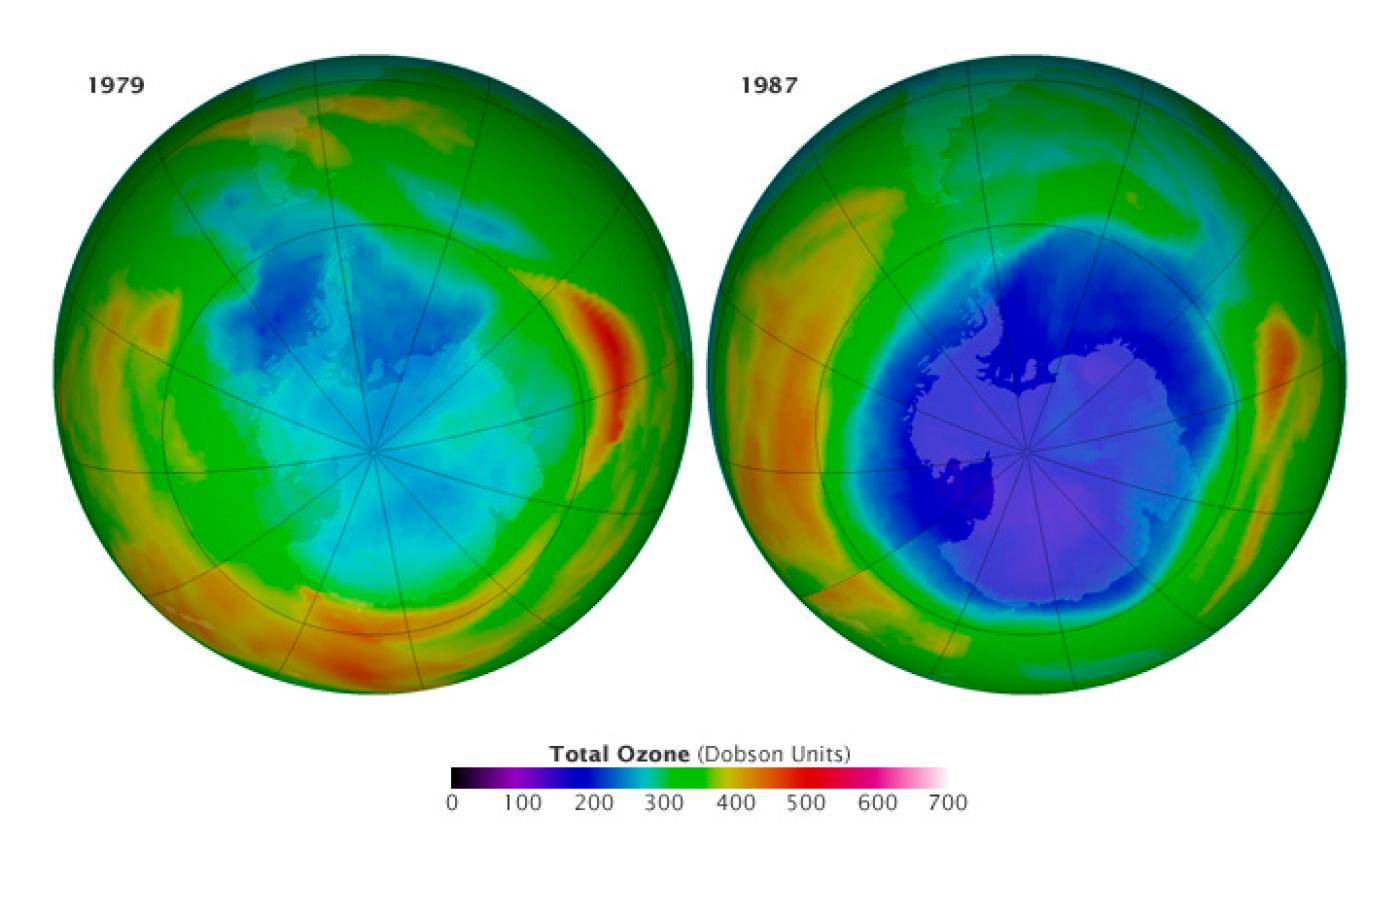 Satelity NASA obserwują dziurę ozonową nad Antarktydą od końca lat 70.